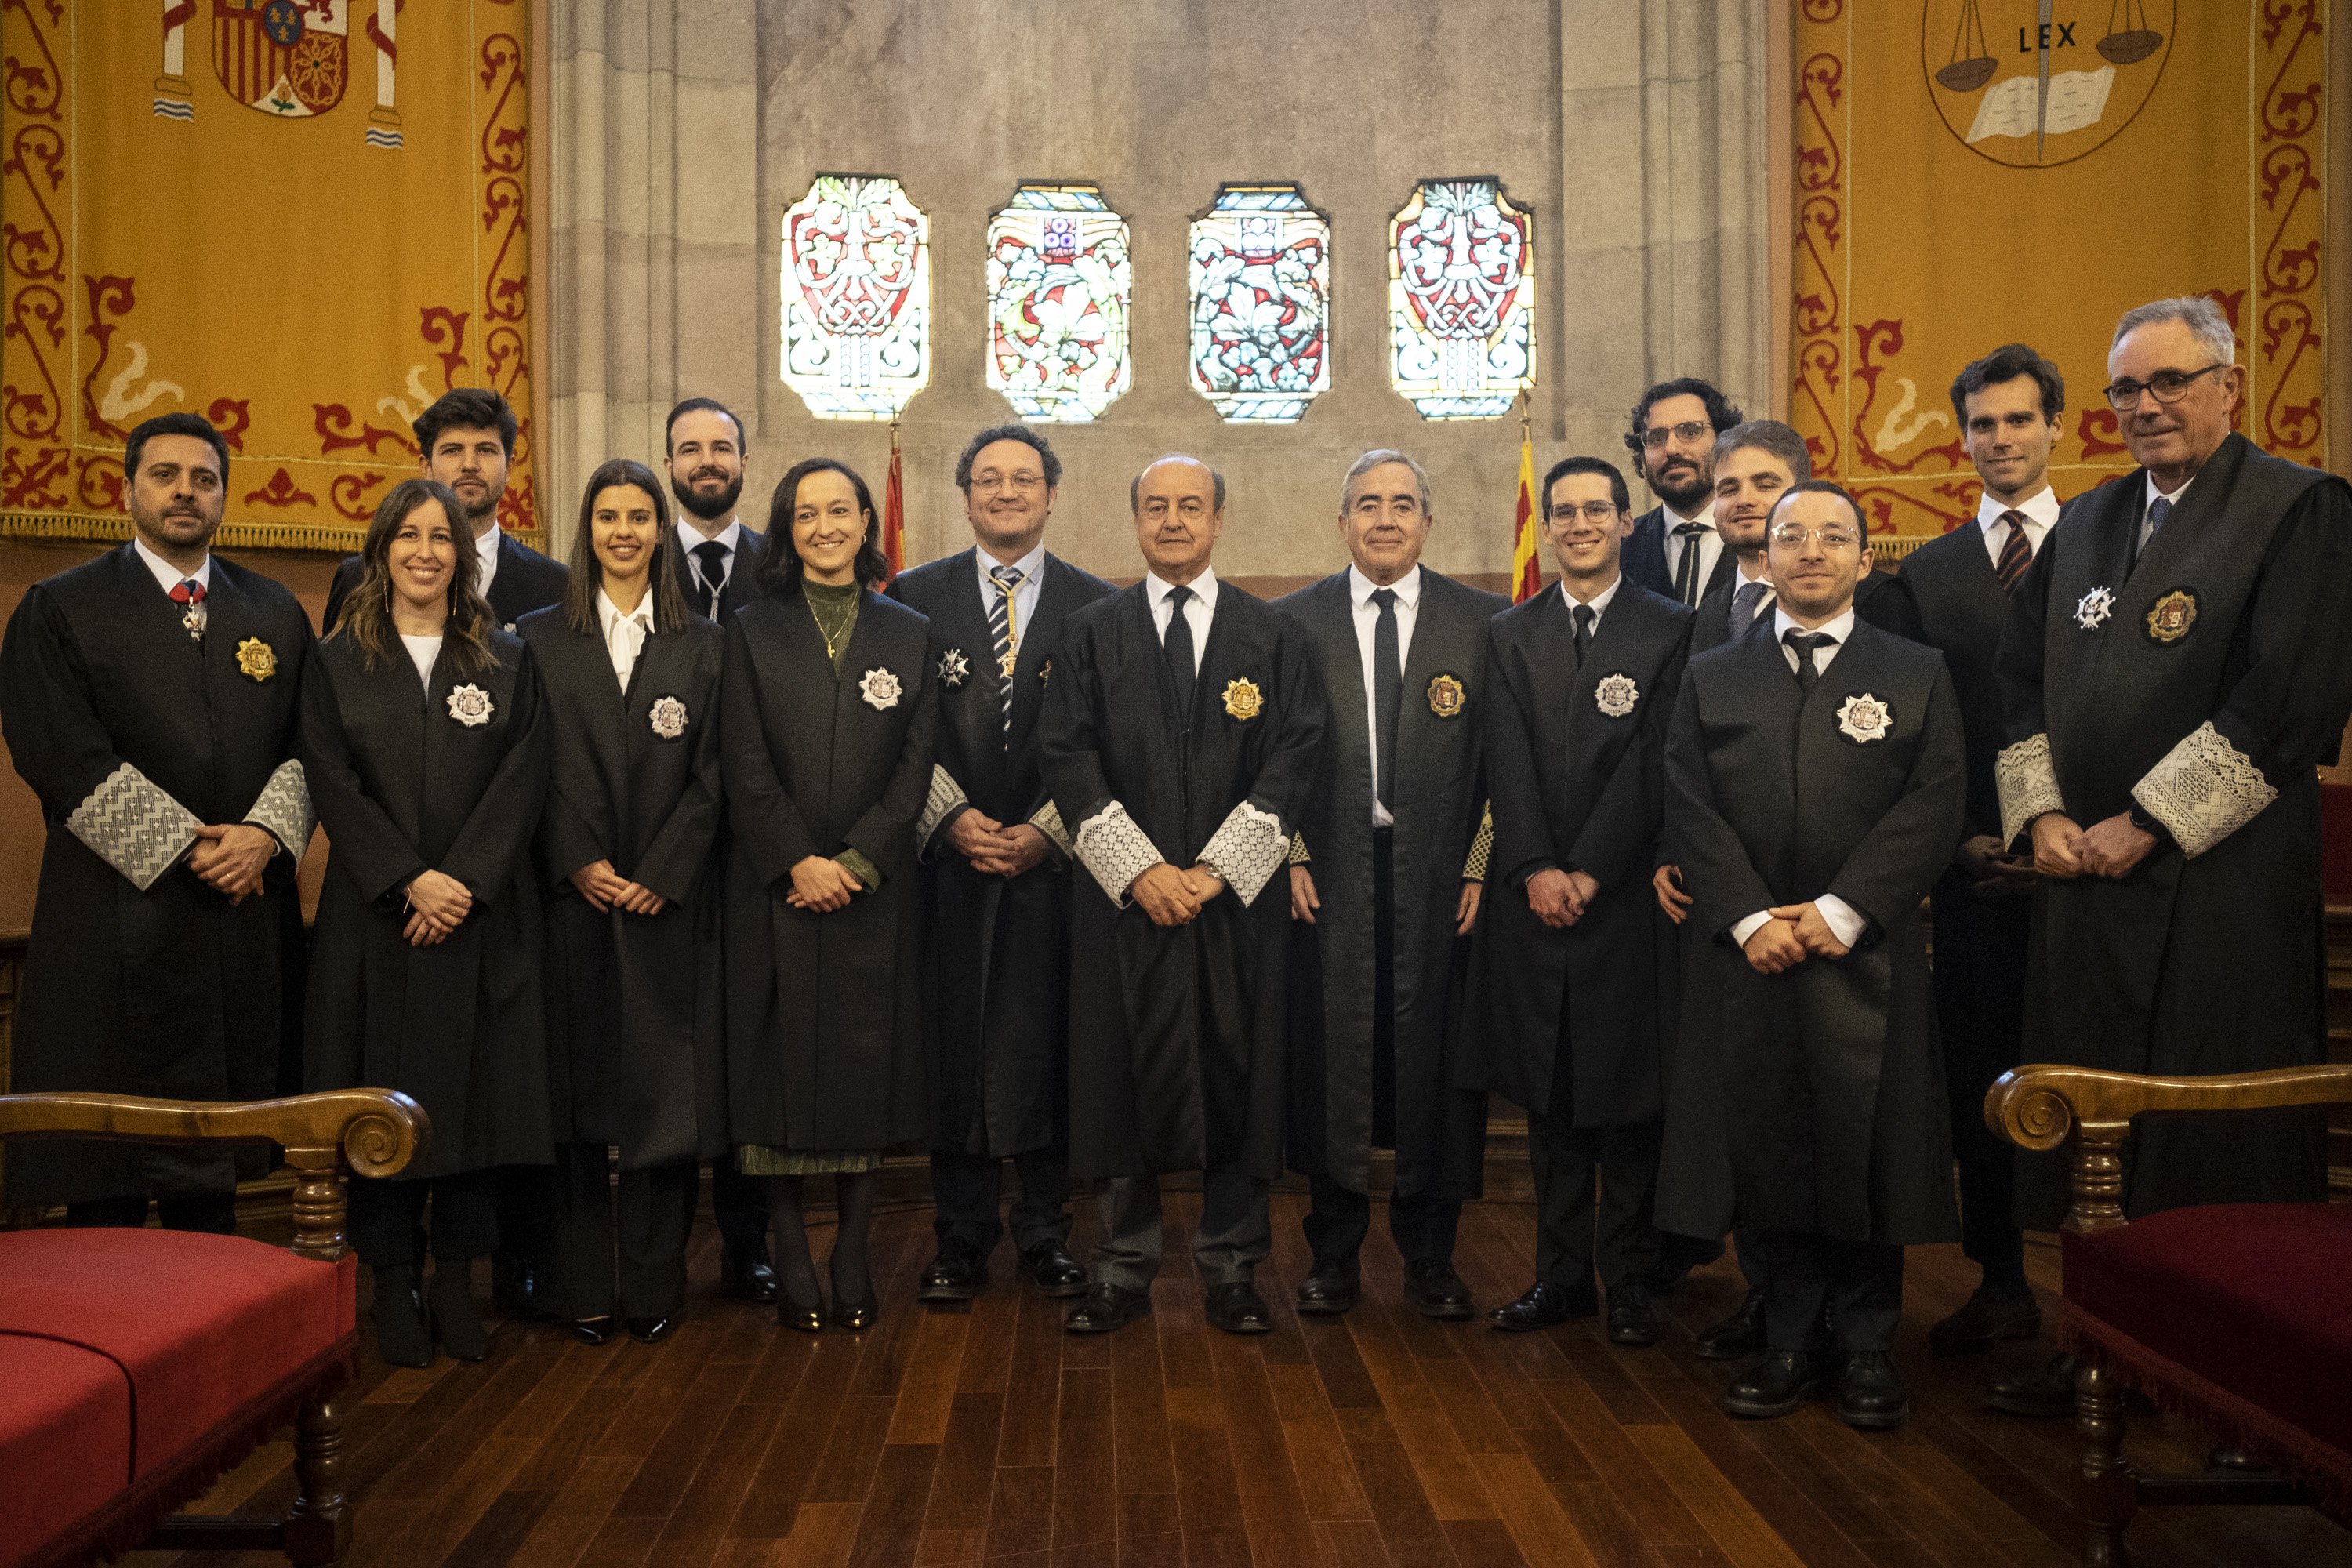 Las mujeres obtienen la mayoría de las 50 becas de Justicia para opositar a juez o fiscal en Catalunya